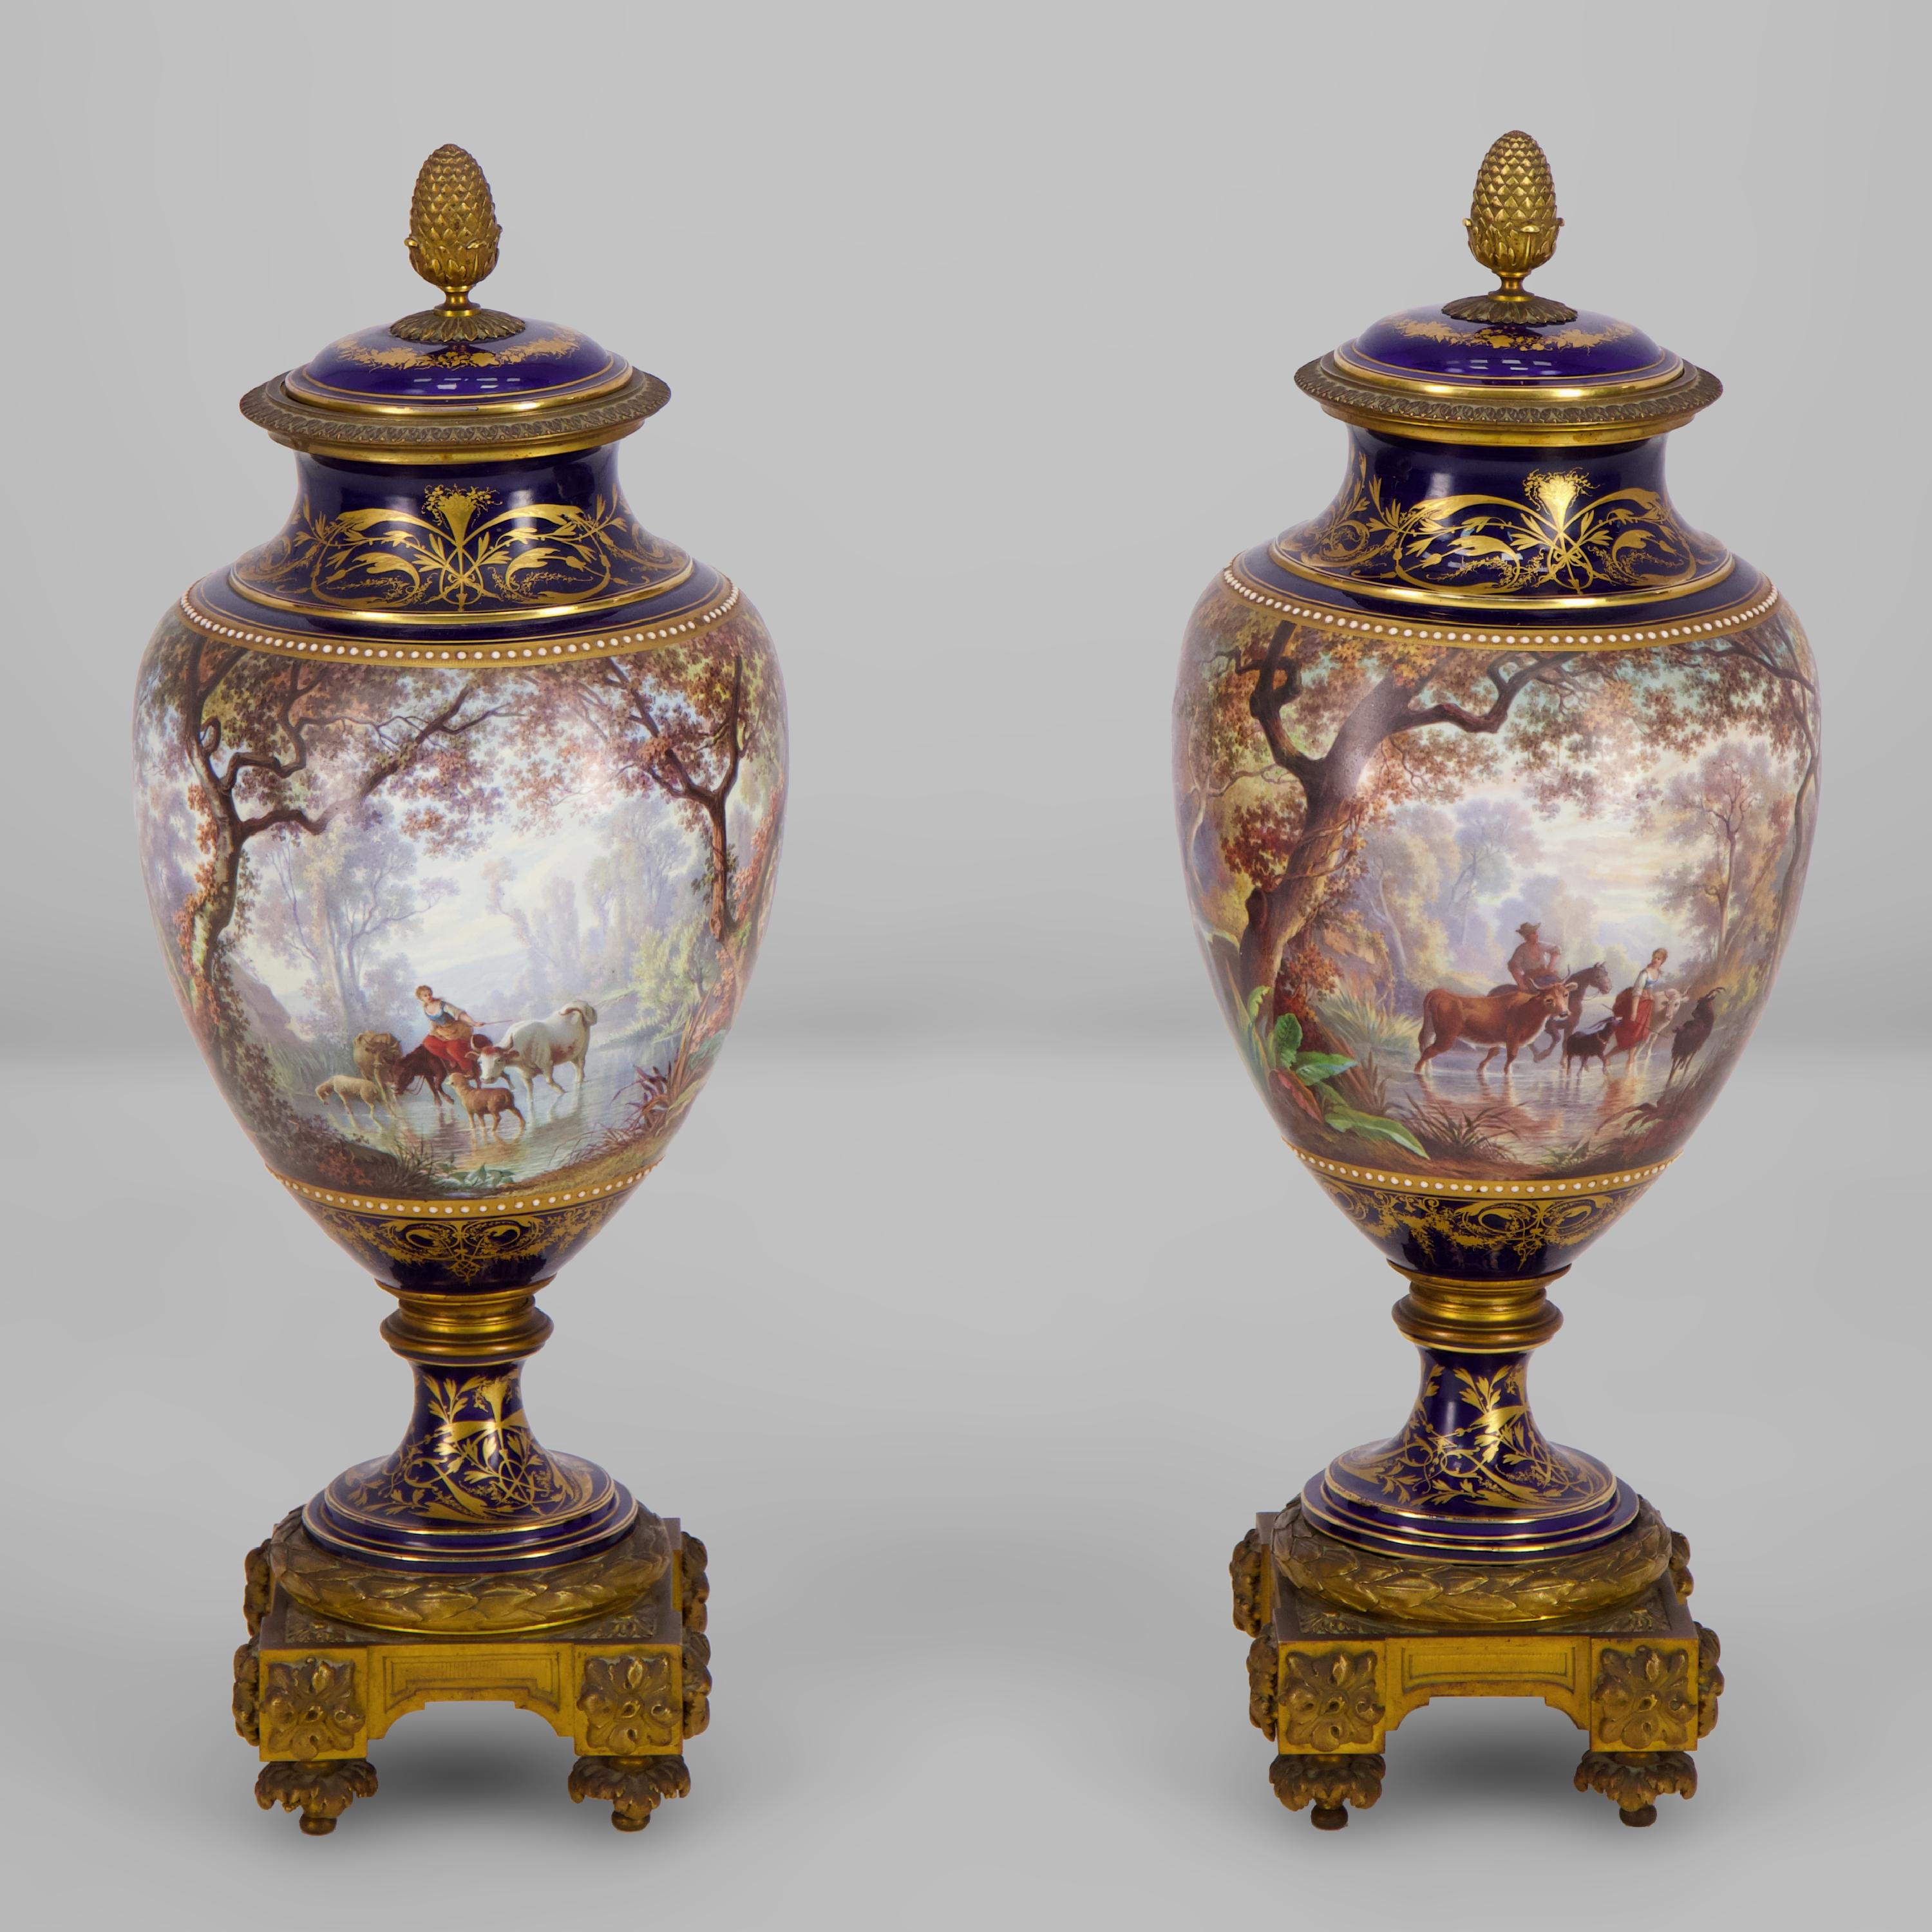 Cette belle paire de vases couverts en porcelaine provient de la Manufacture de Sèvres où les pièces blanches ont été achetées en 1869, décorées puis montées en bronze doré par J. Machereau.

Il est désigné comme 